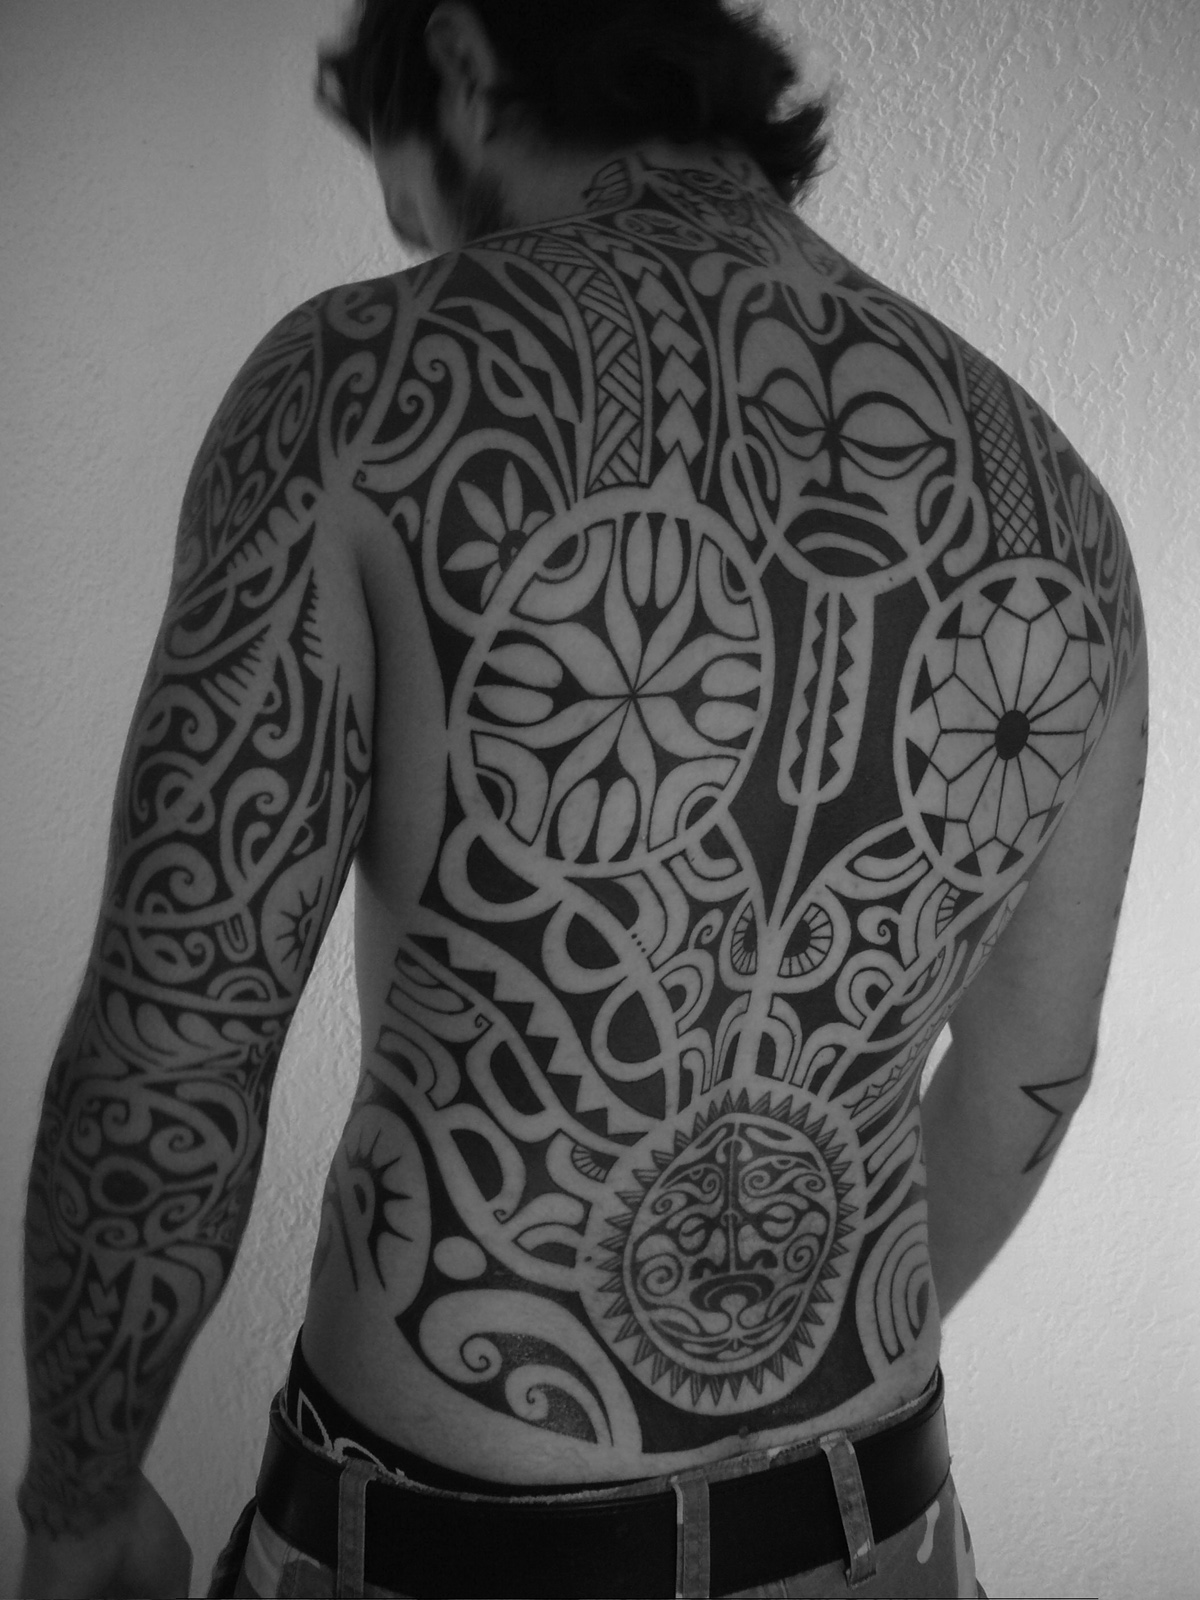 Tattoo uploaded by Robert Davies • Tribal Tattoo by Neil Bass #tribal  #tribaltattoo #tribaltattoos #polynesian #polynesiantattoos #maori  #maoritattoos #samoan #samoantattoos #NeilBass • Tattoodo